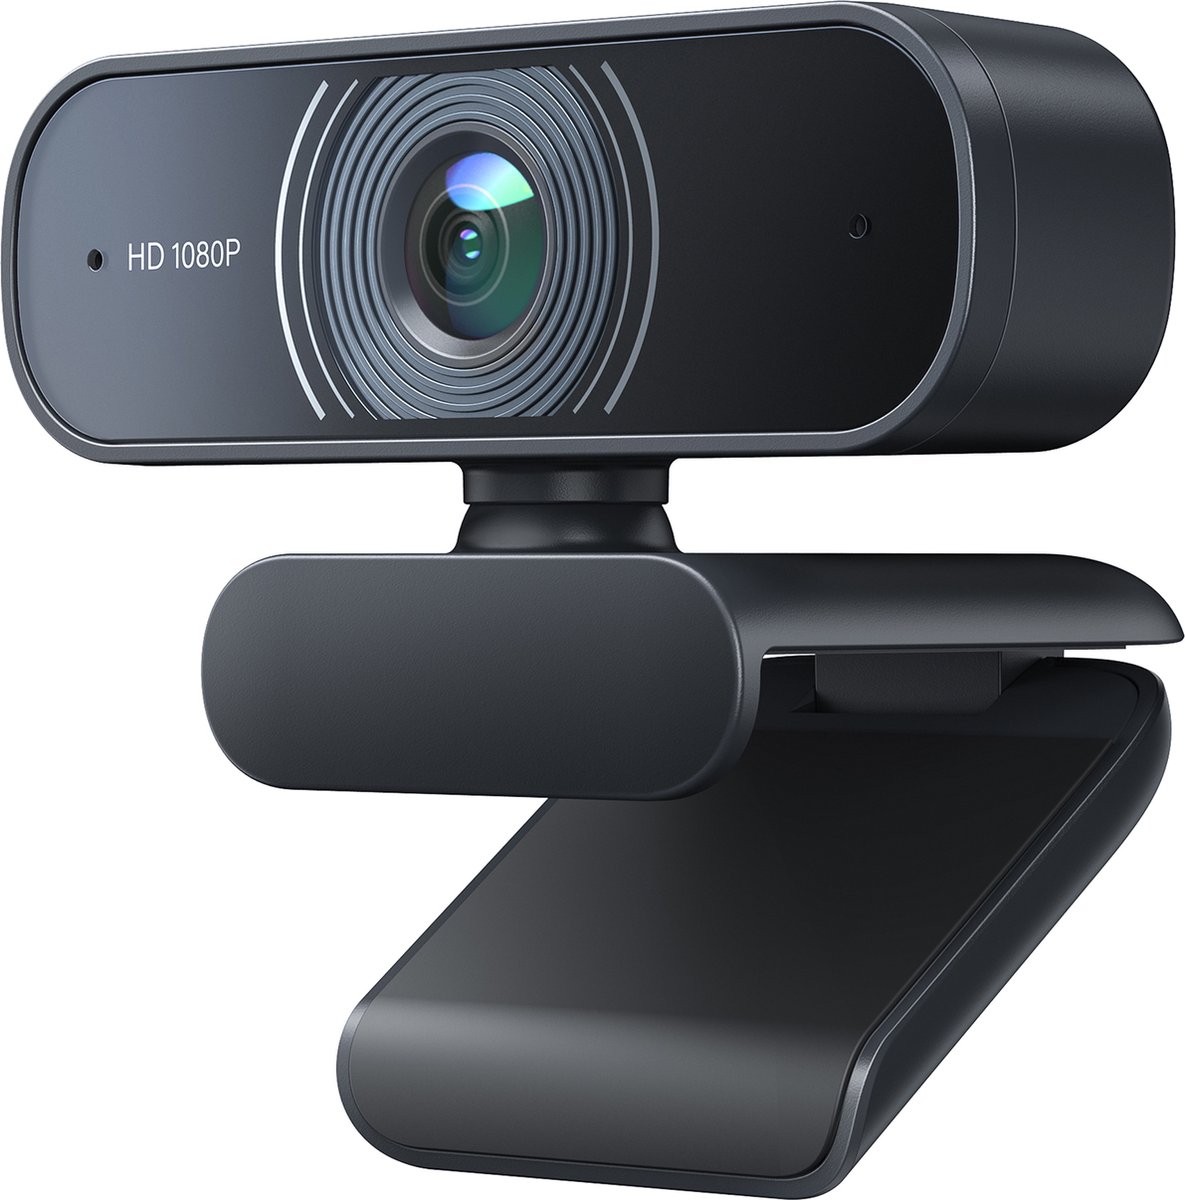 Victure webcam - Webcam Voor PC en Laptop - Full HD 1080P - Met Twee Ingebouwde Microfoon - USB 2.0 - Plug & Play - Windows & Mac